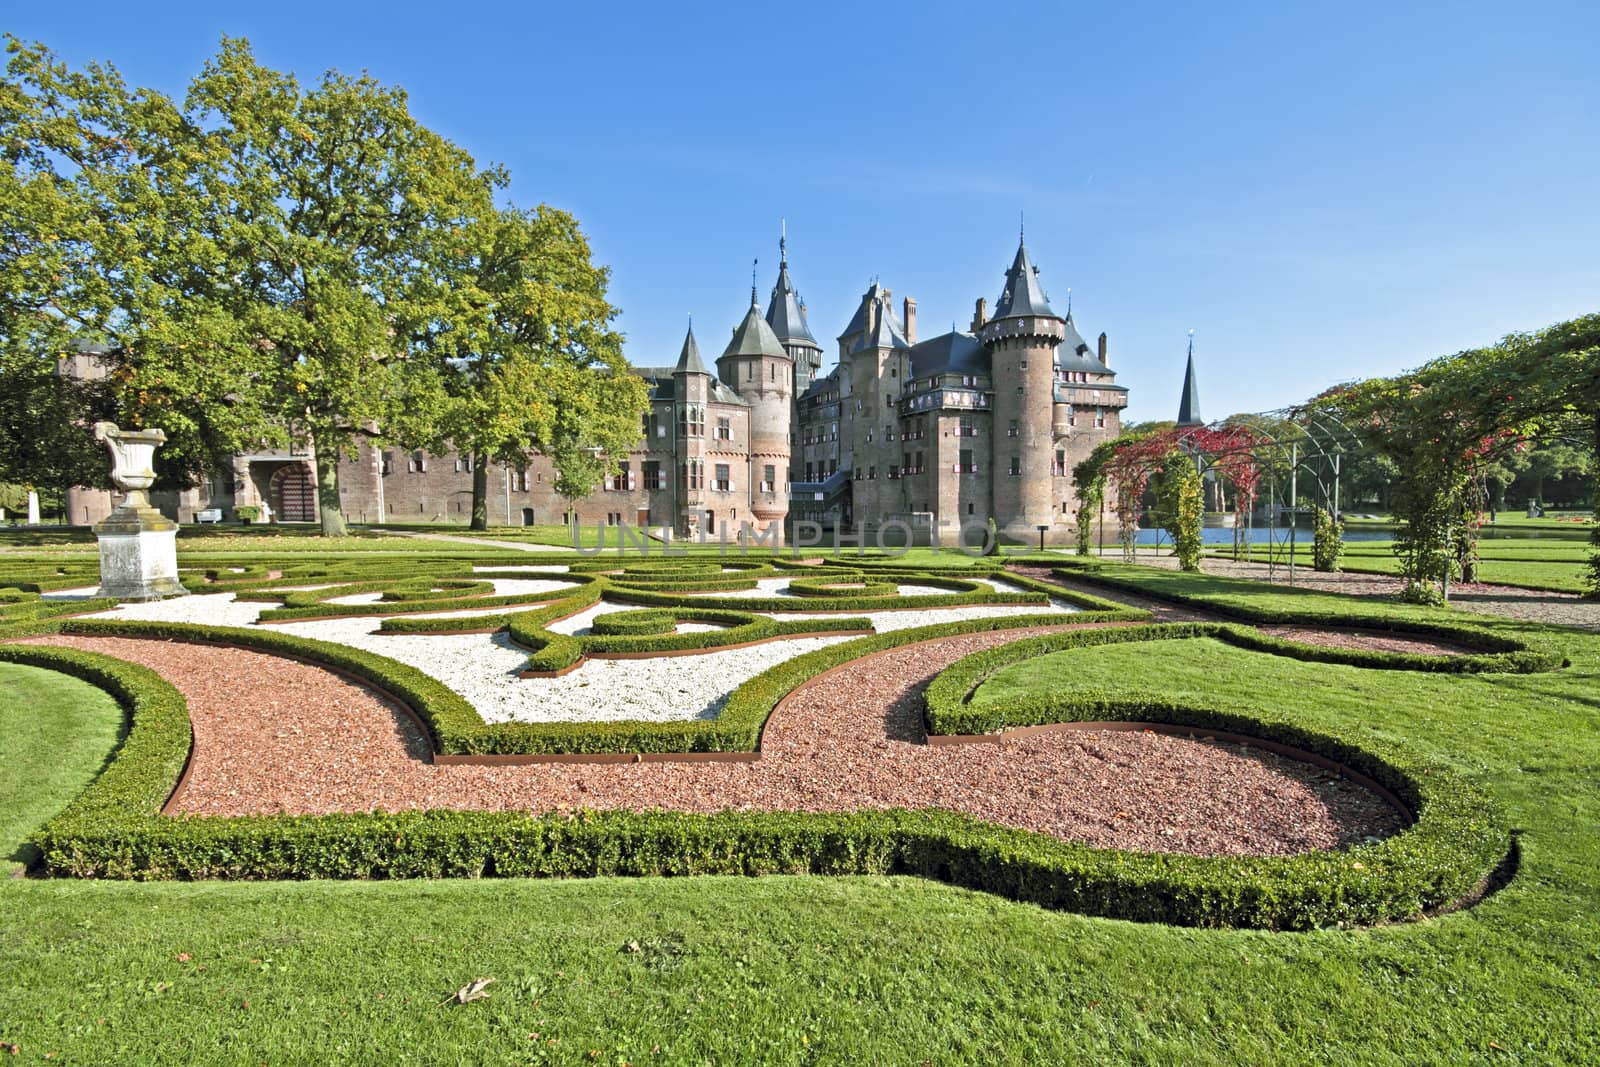 Medieval castle ''De Haar'' in the Netherlands by devy